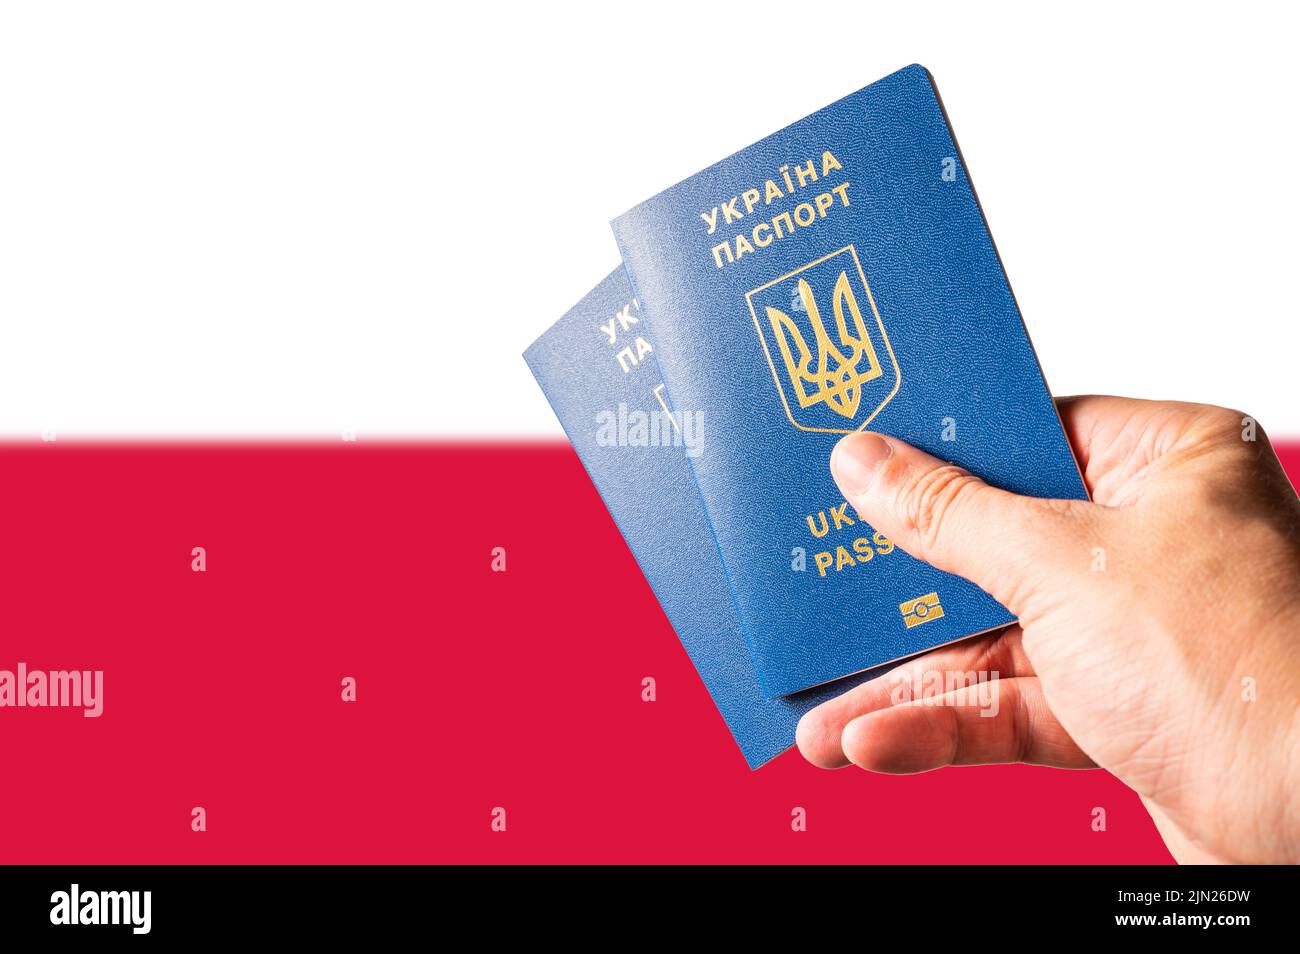 Deux passeports biométriques ukrainiens dans la main d'un homme contre le drapeau national de la Pologne. Voyages, tourisme, réfugiés, guerre en Ukraine, bu Banque D'Images